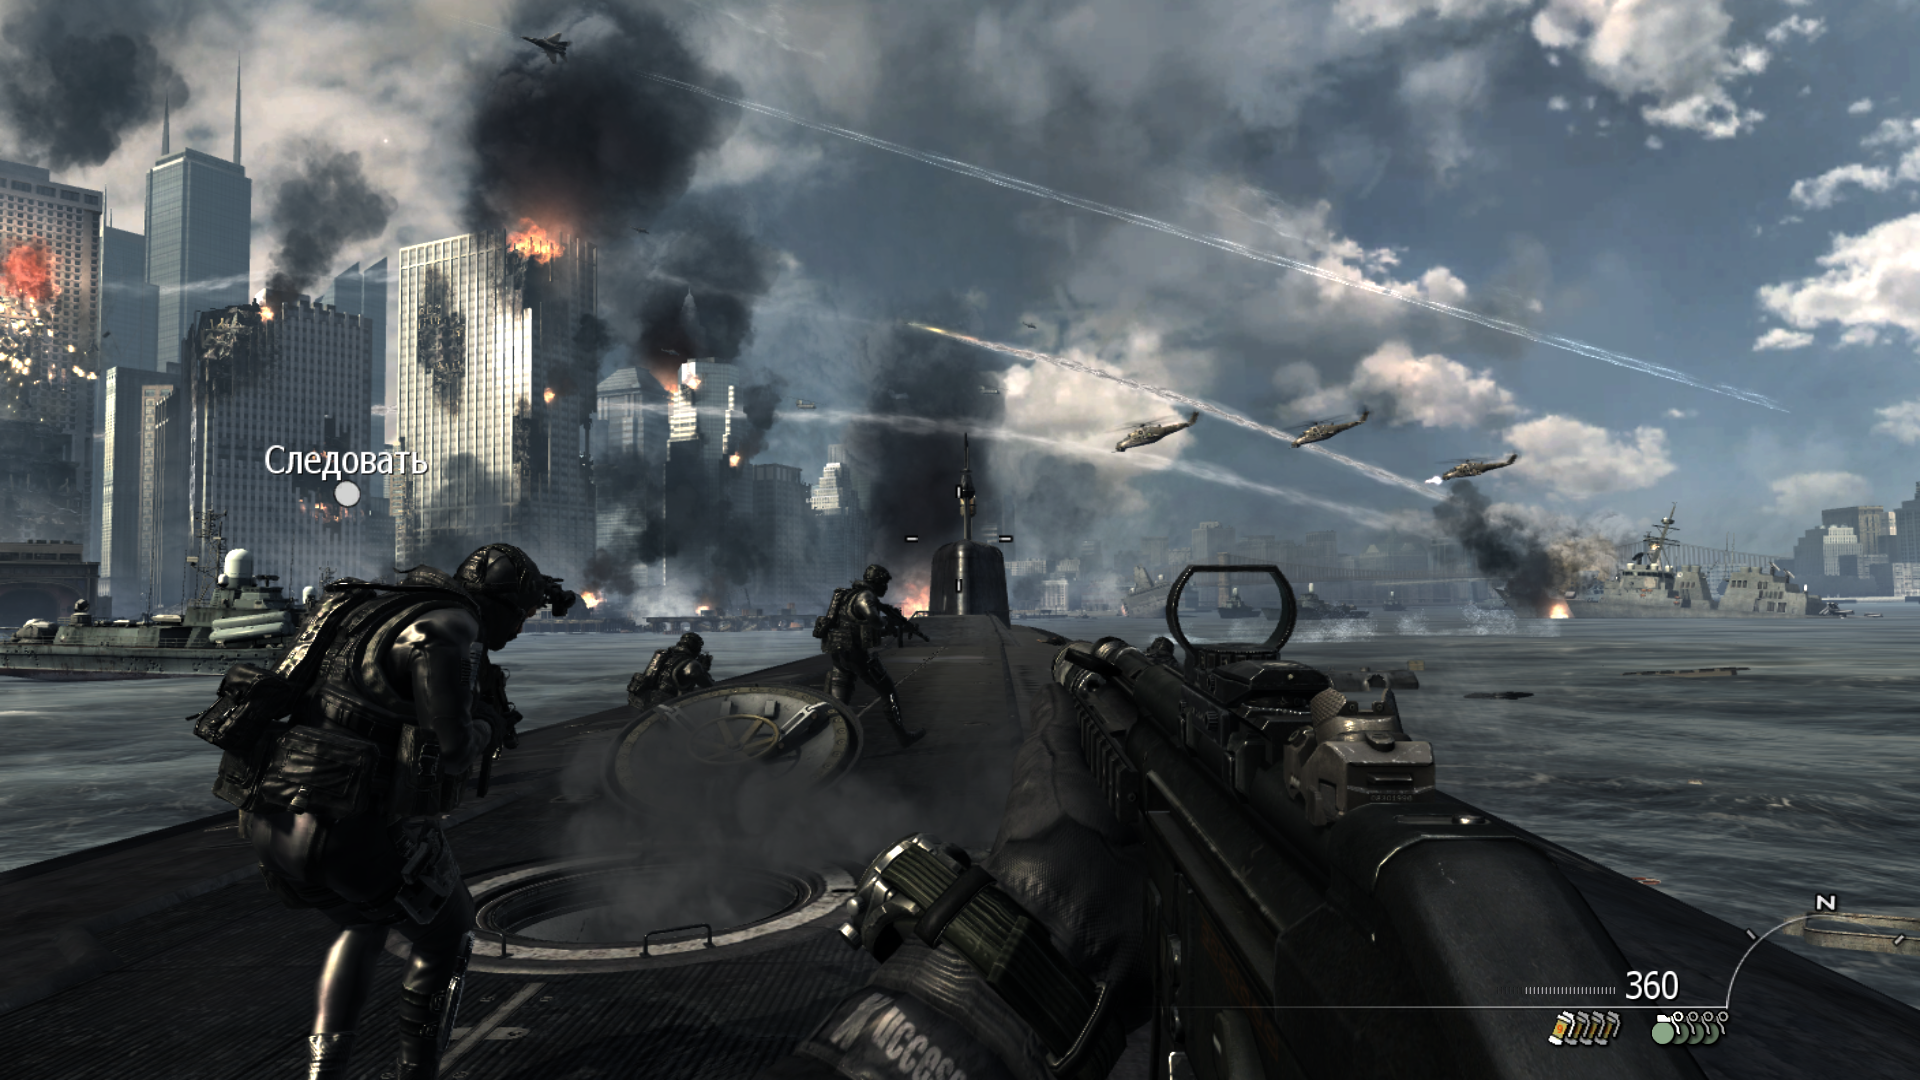 Установить игру call of duty. Call of Duty: Modern Warfare 3. Call of Duty Modern варфаер 3. Call of Duty 8 Modern Warfare 3. Call of Duty Modern Warfare 3 2011.